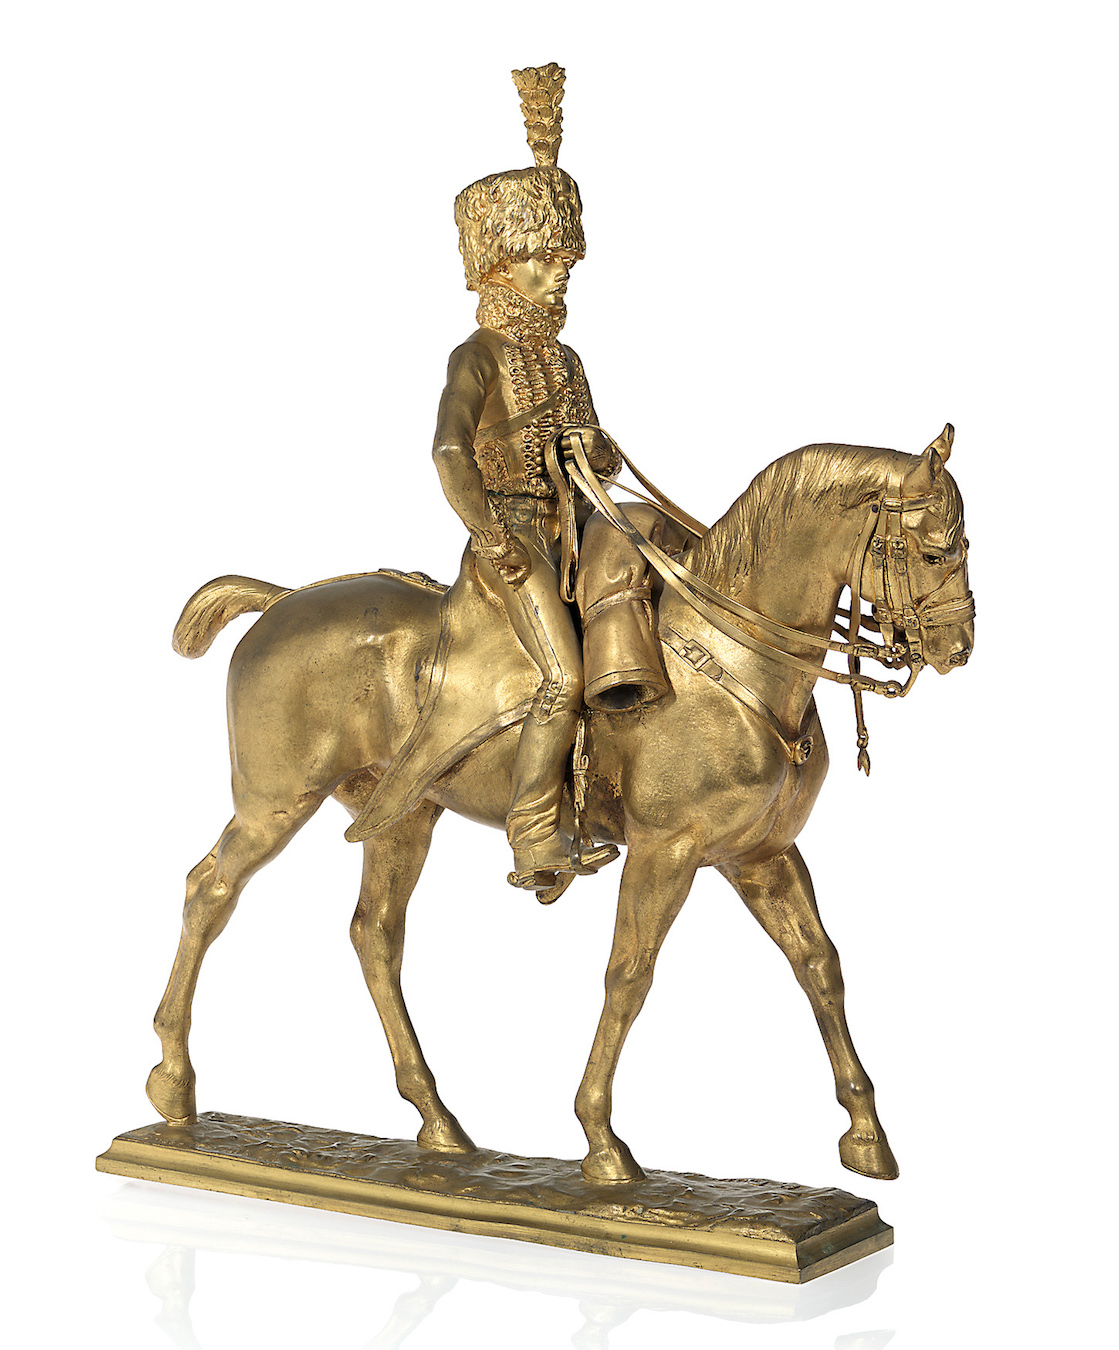 A Russian Bronze Sculpture of a Hussar